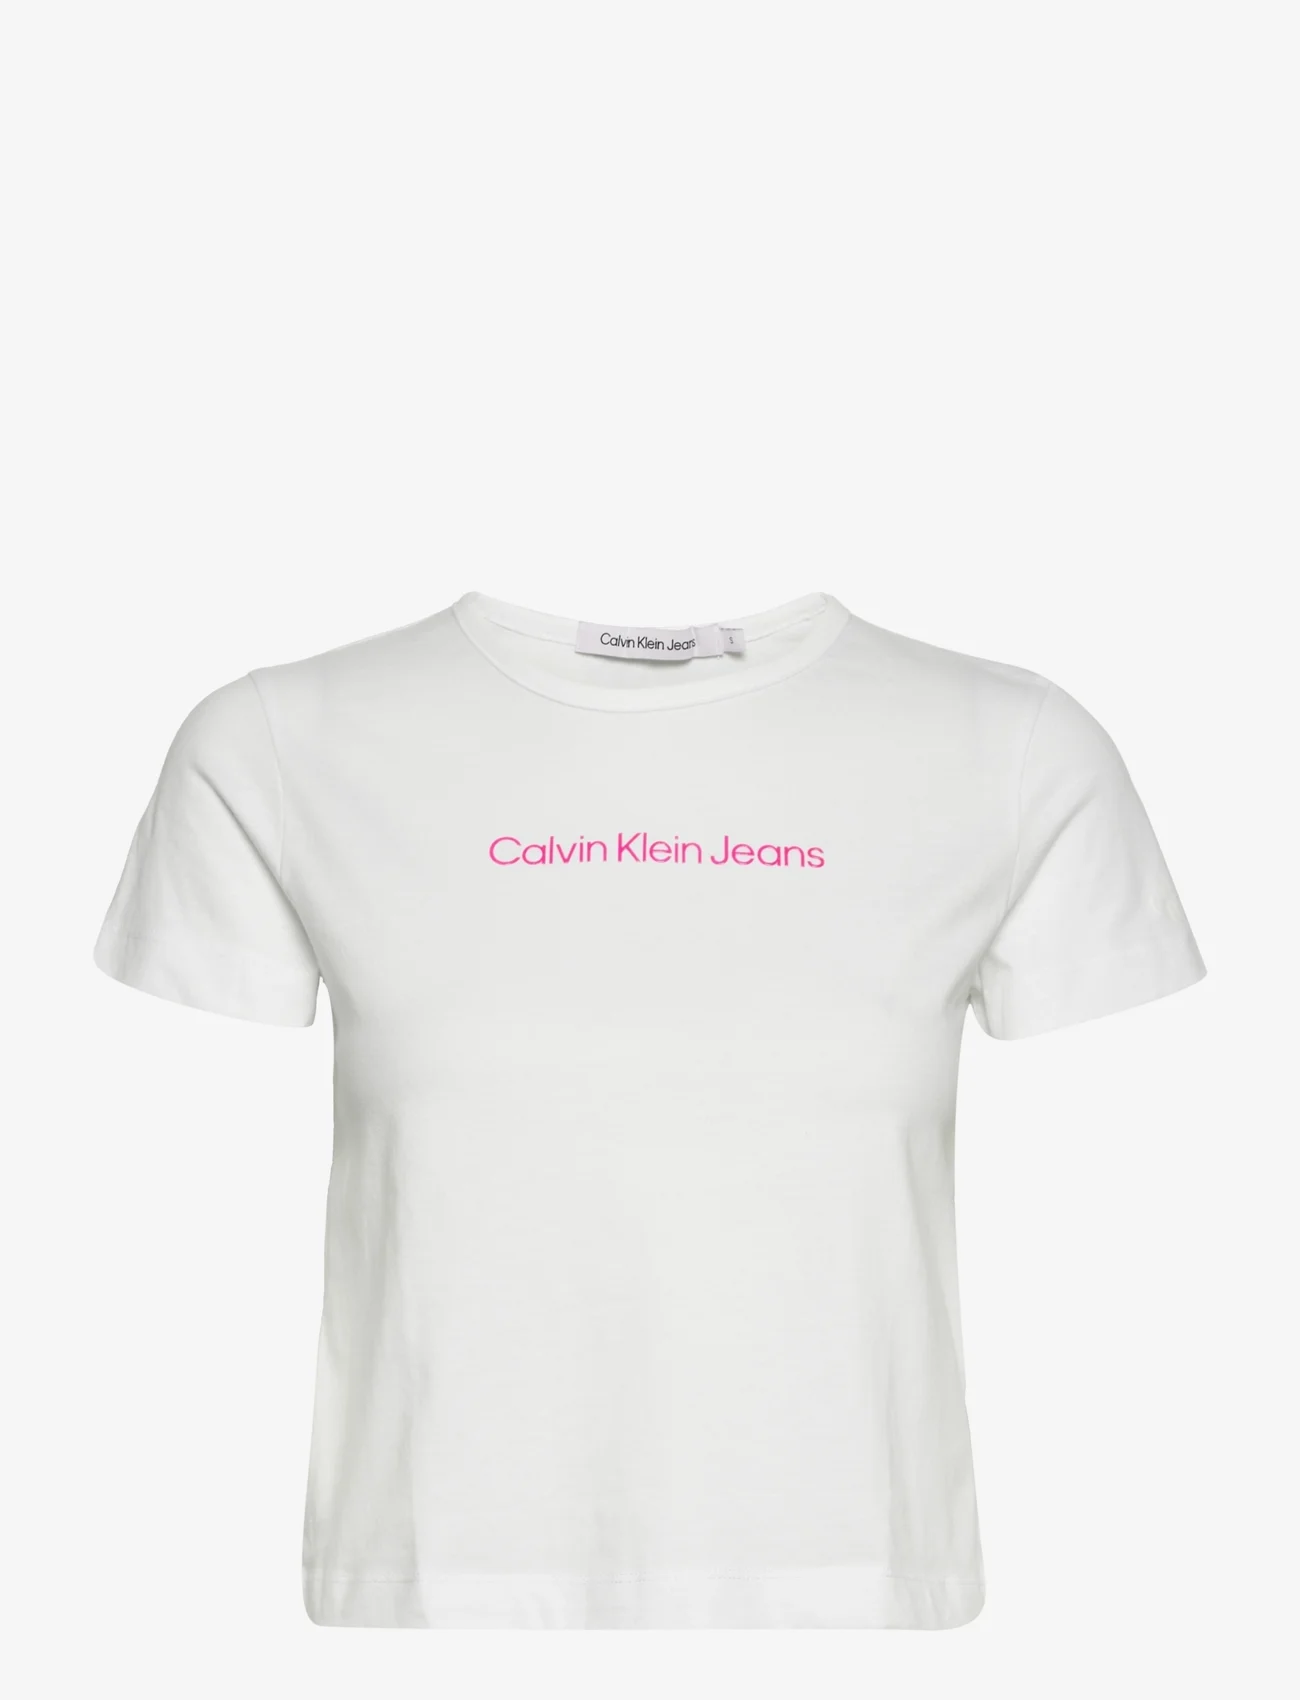 Calvin Klein Jeans Shrunken Institutional Baby Tee - T-shirts 